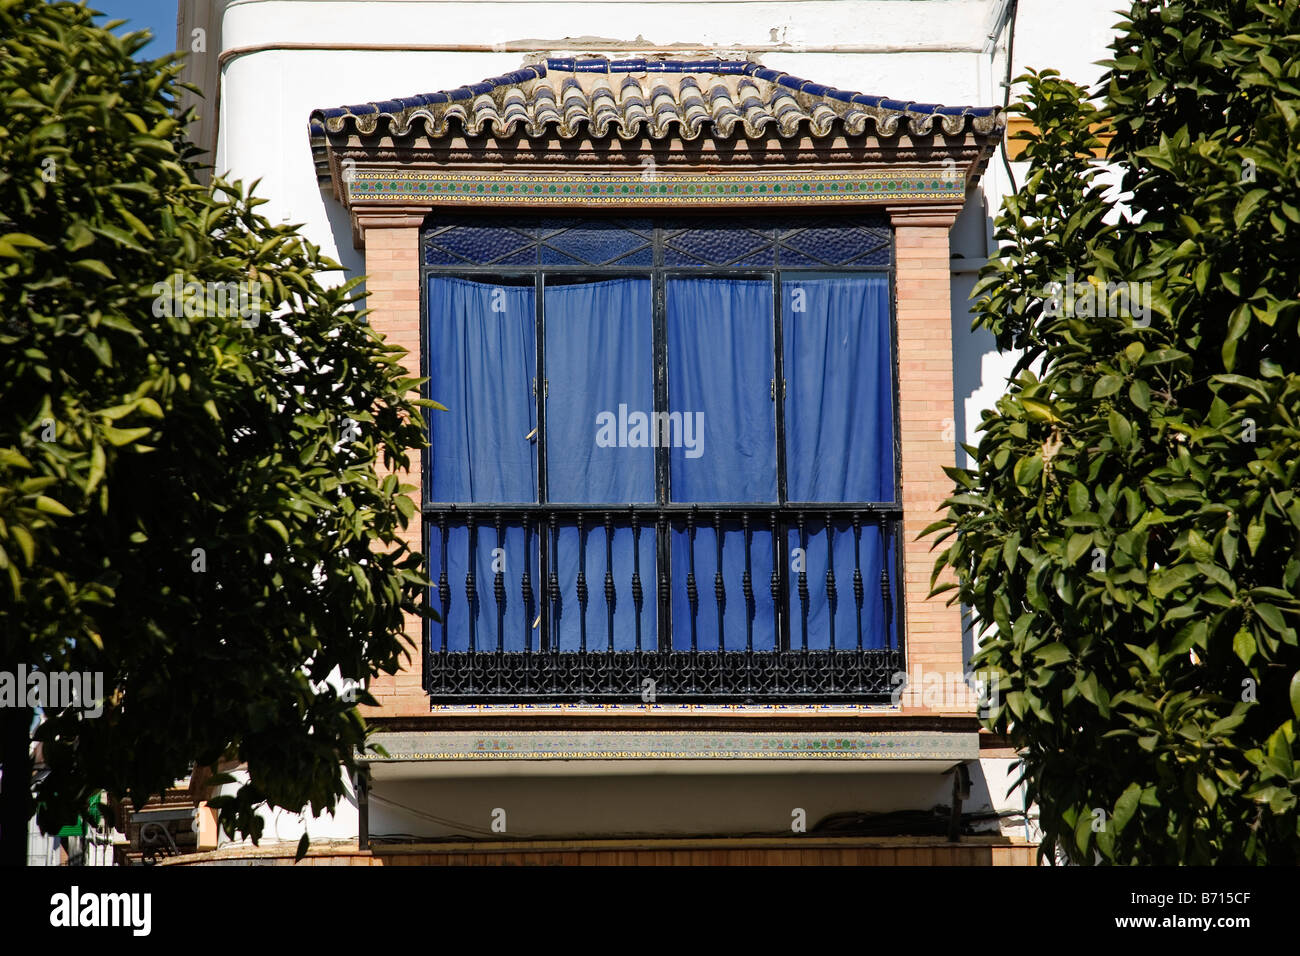 casa tipica de utrera sevilla andalucia españa Typical house in Utrera sevilla andalusia spain Stock Photo